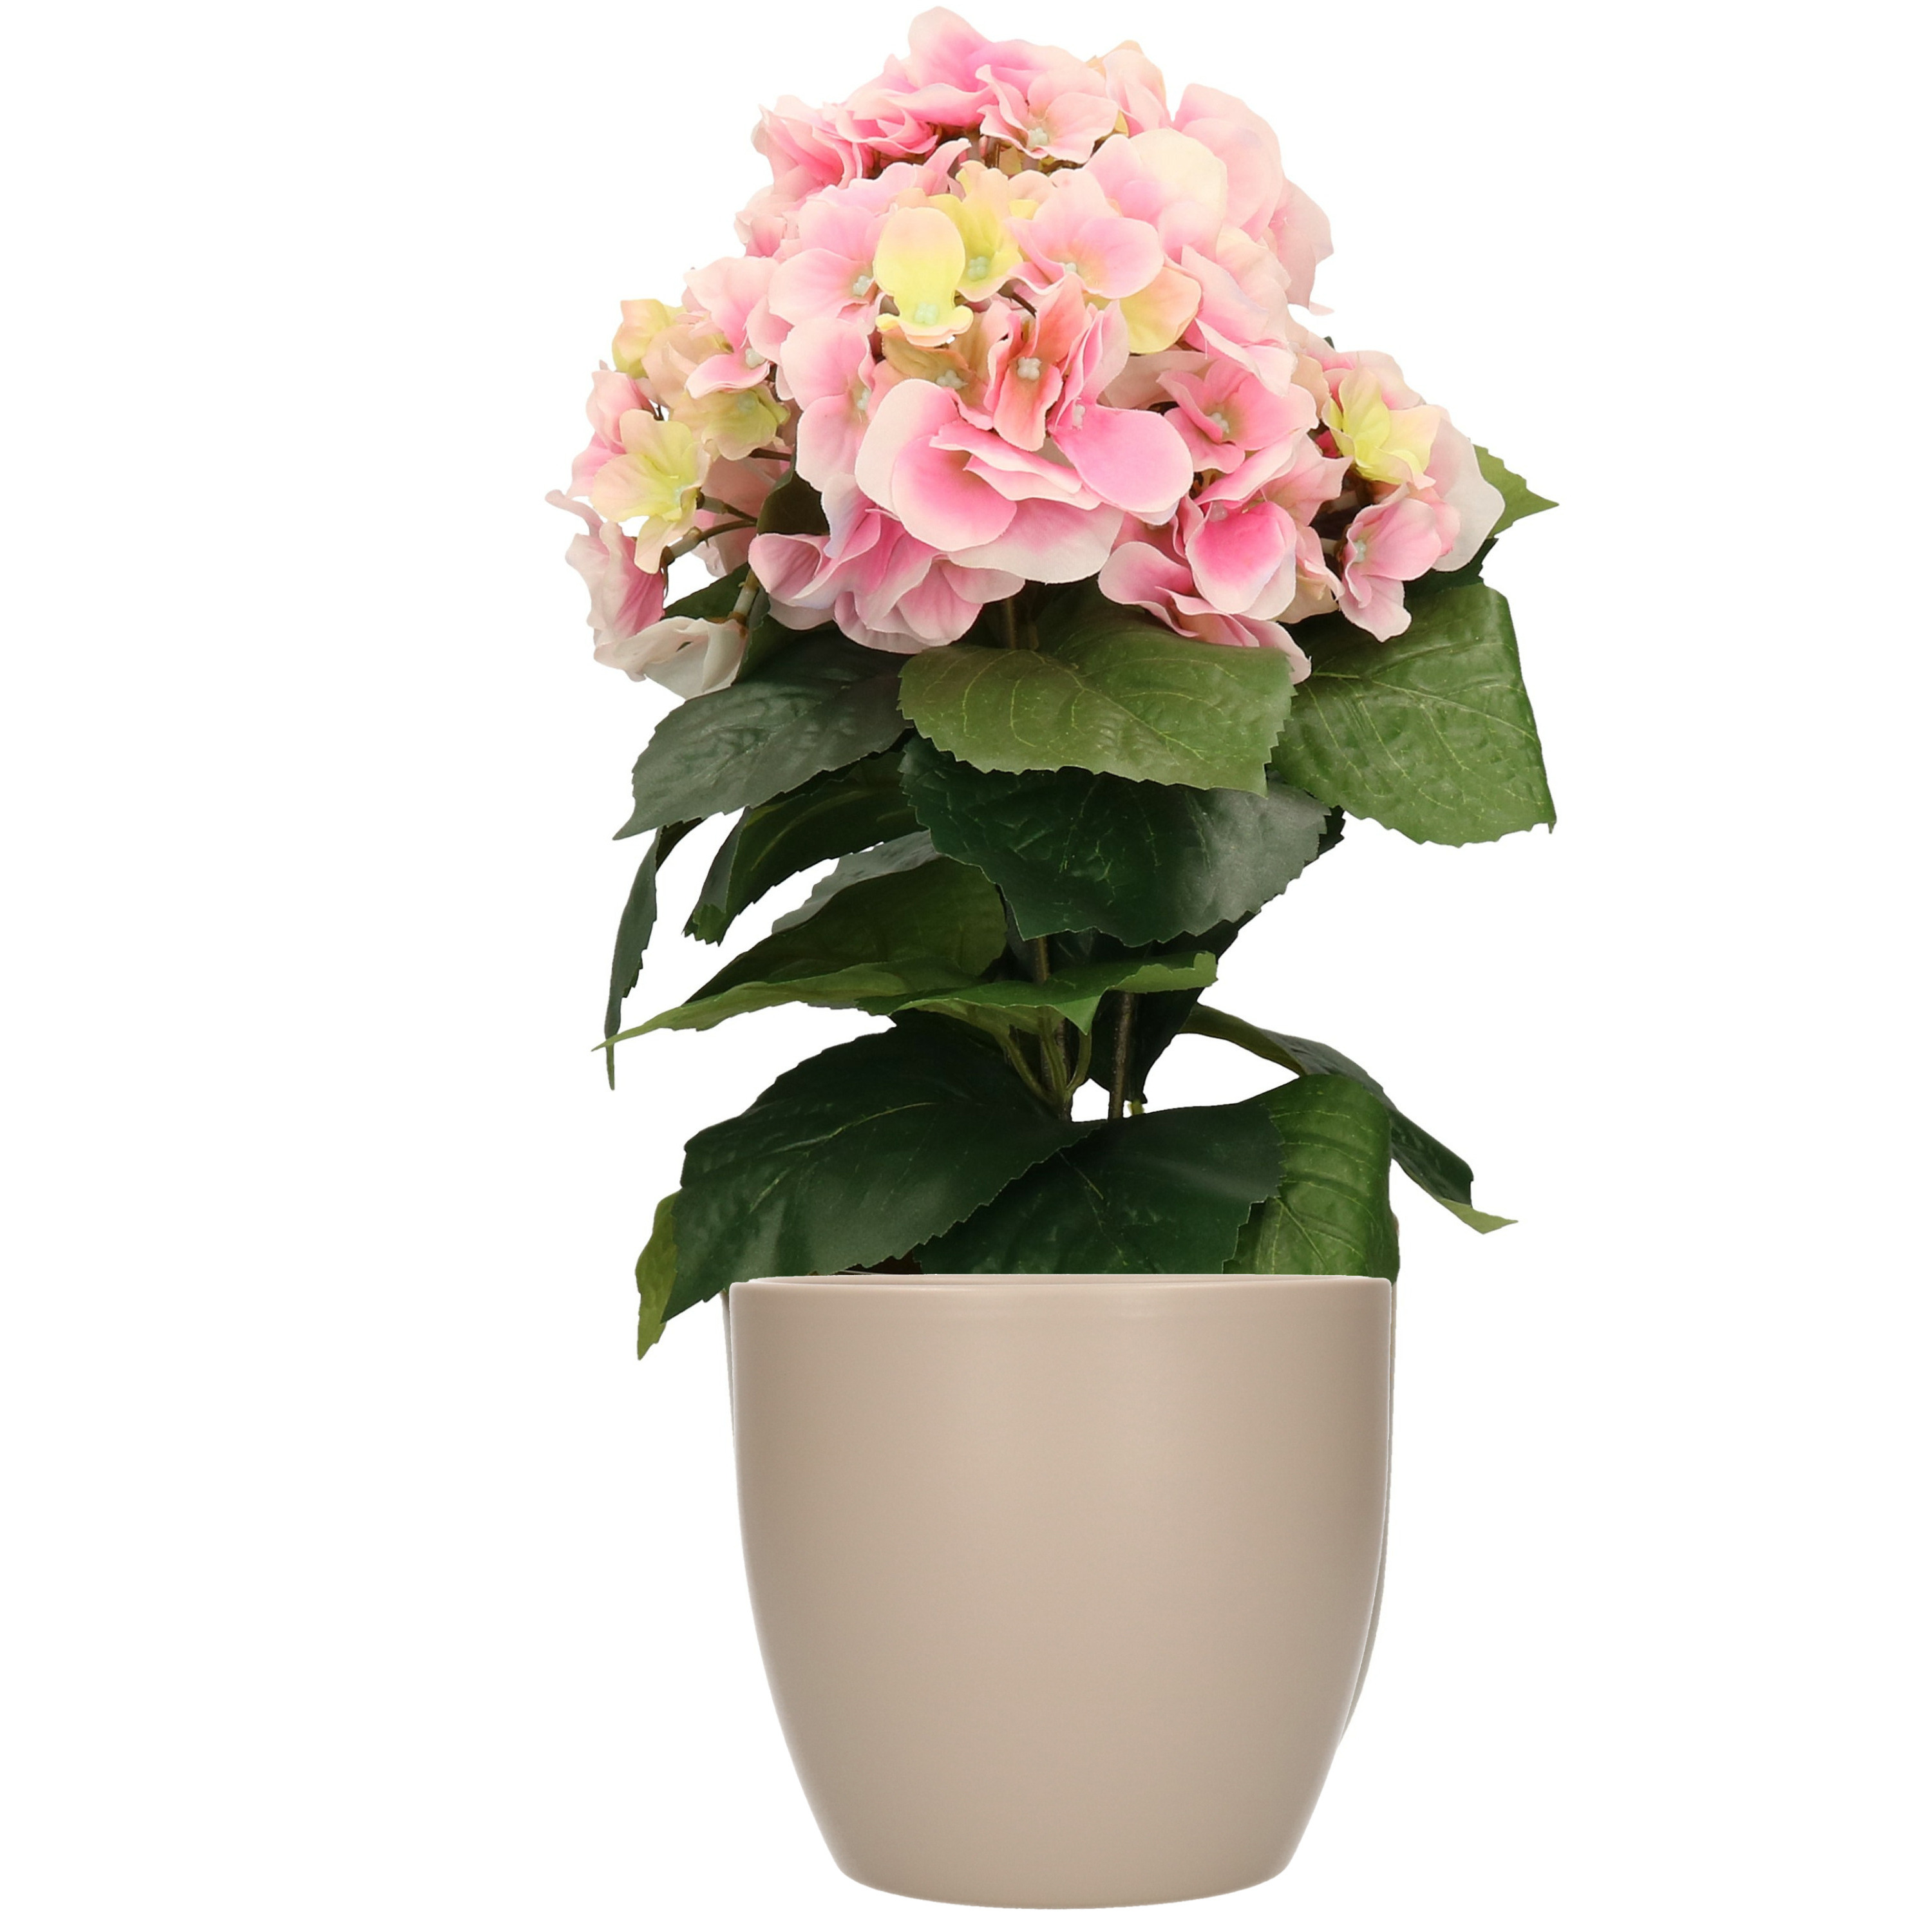 Hortensia kunstplant met bloemen lichtroze in pot taupe 40 cm hoog